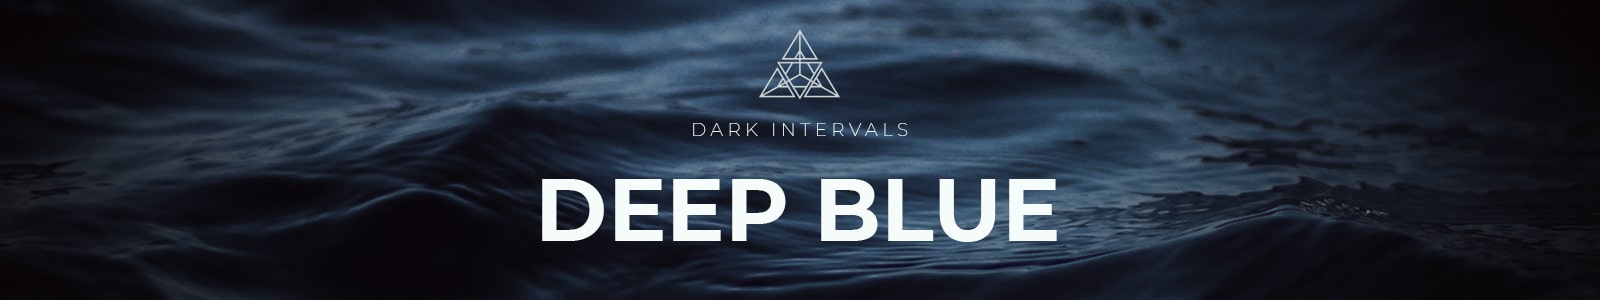 deep blue by dark intervals